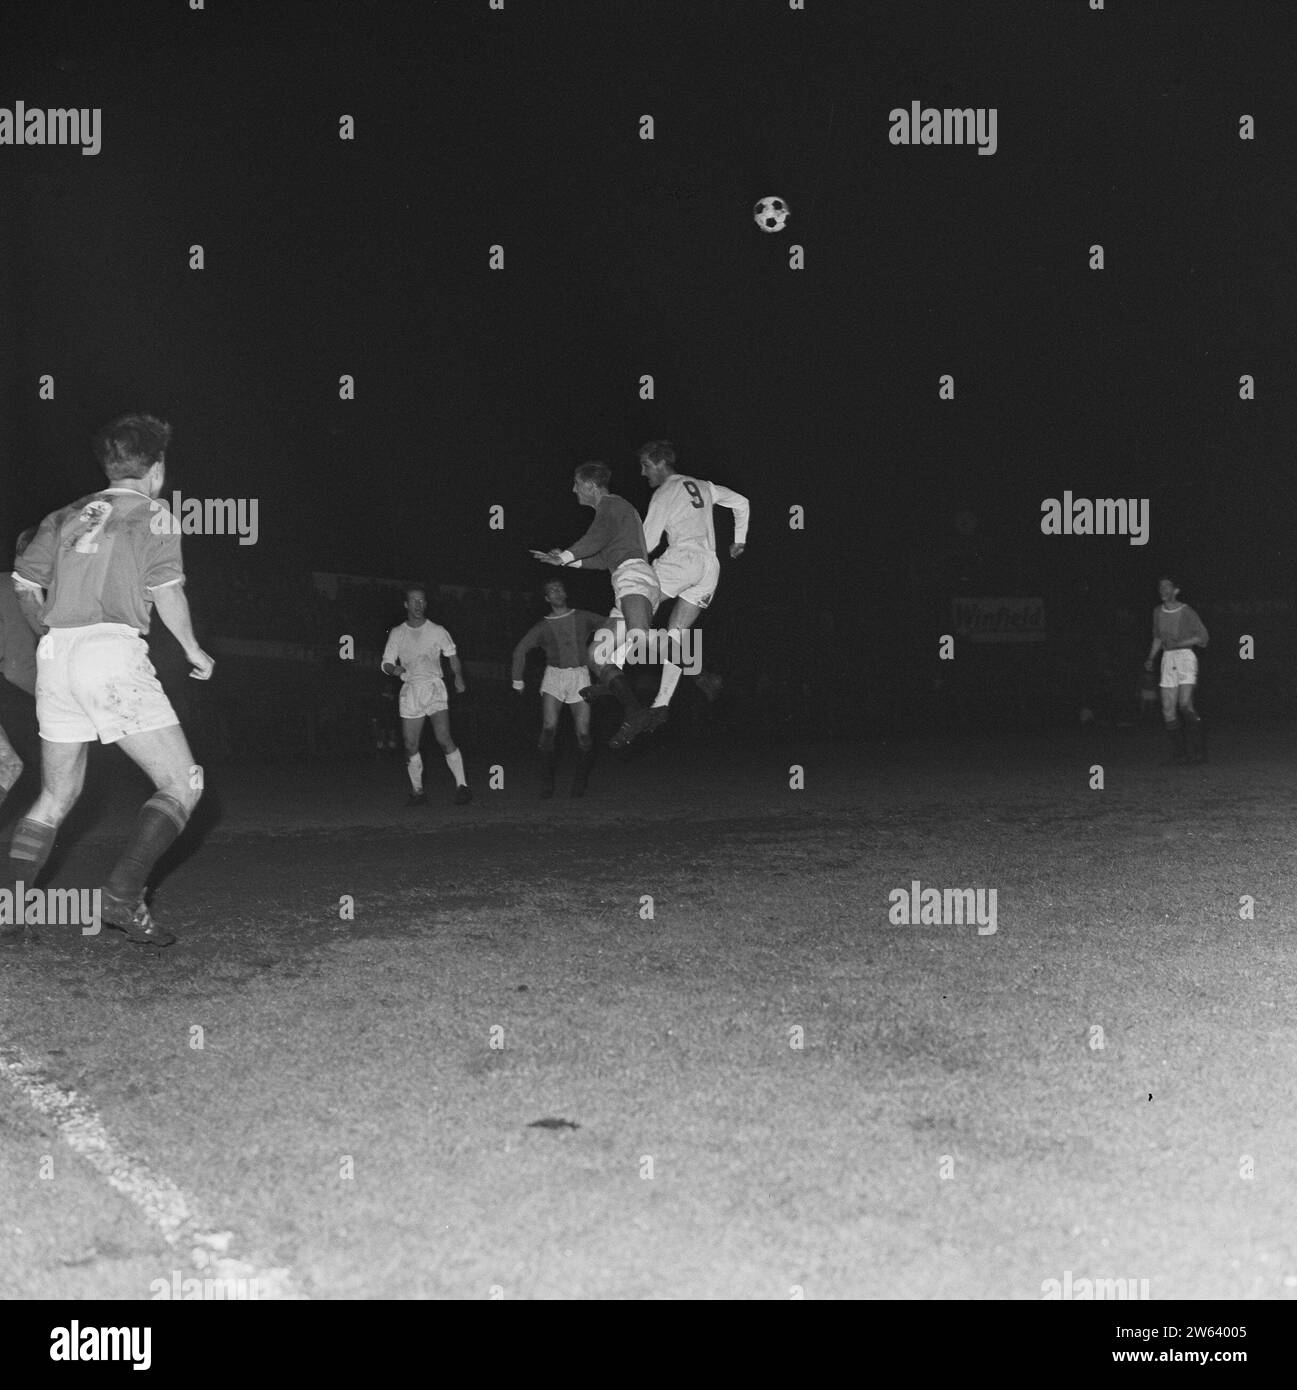 ADO contro Ajax 1-0 per la KNVB Cup a Utrecht, momento della partita ca. 23 aprile 1964 Foto Stock